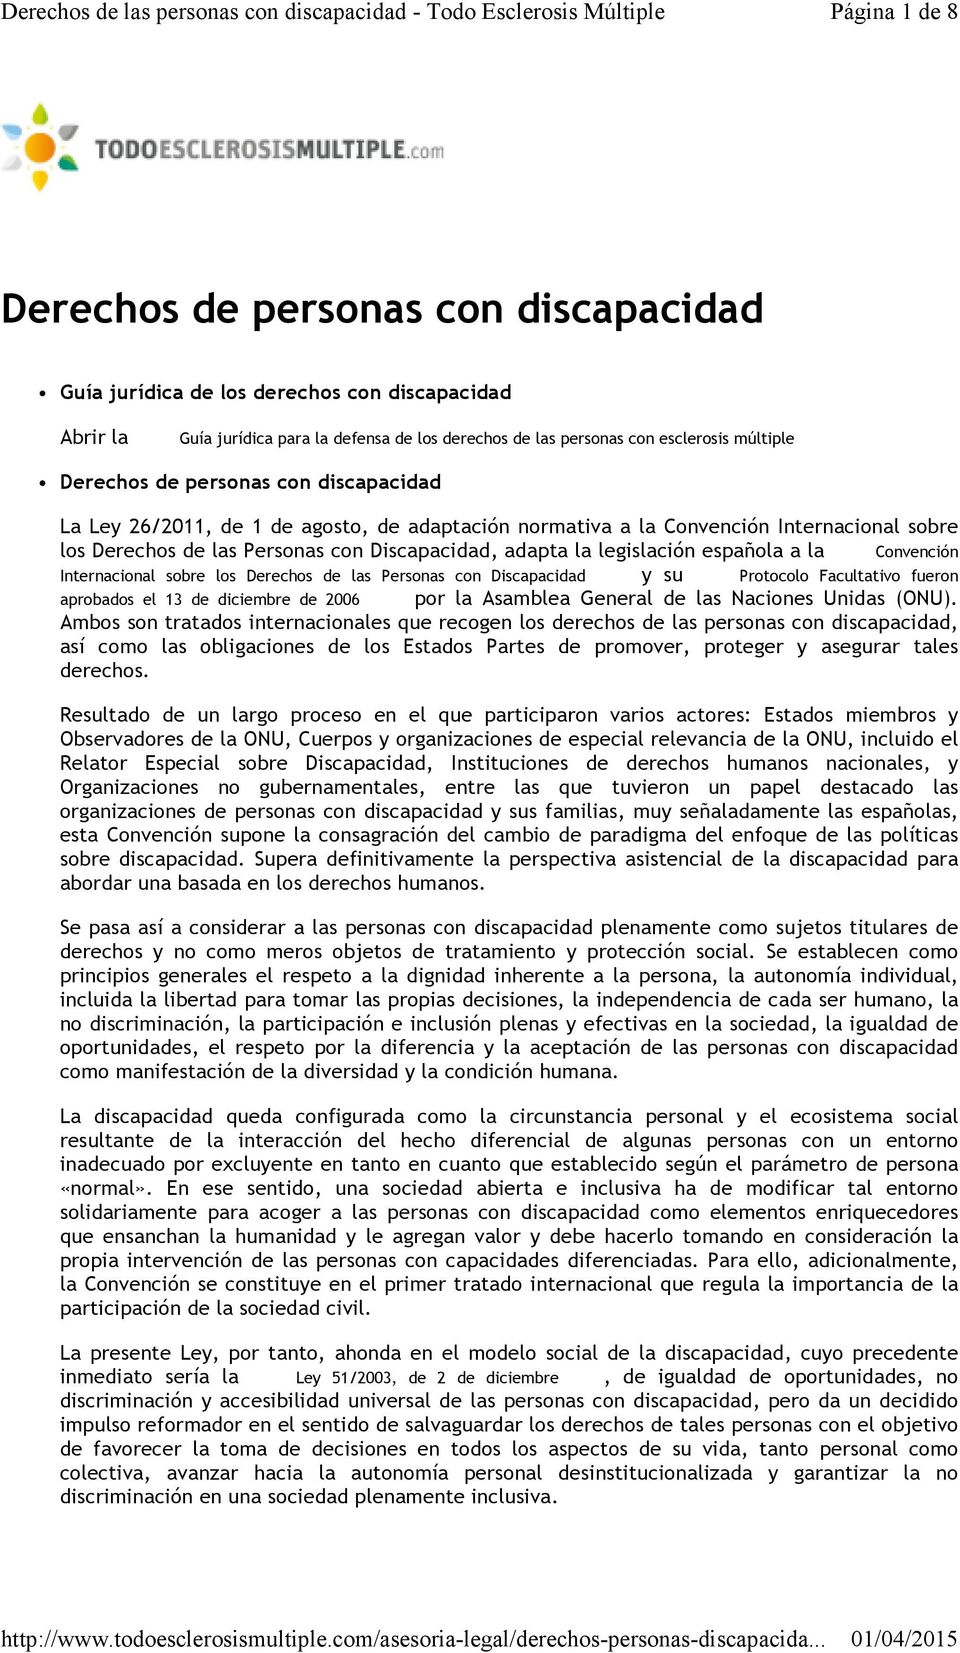 española a la Convención Internacional sobre los Derechos de las Personas con Discapacidad y su Protocolo Facultativo fueron aprobados el 13 de diciembre de 2006 por la Asamblea General de las